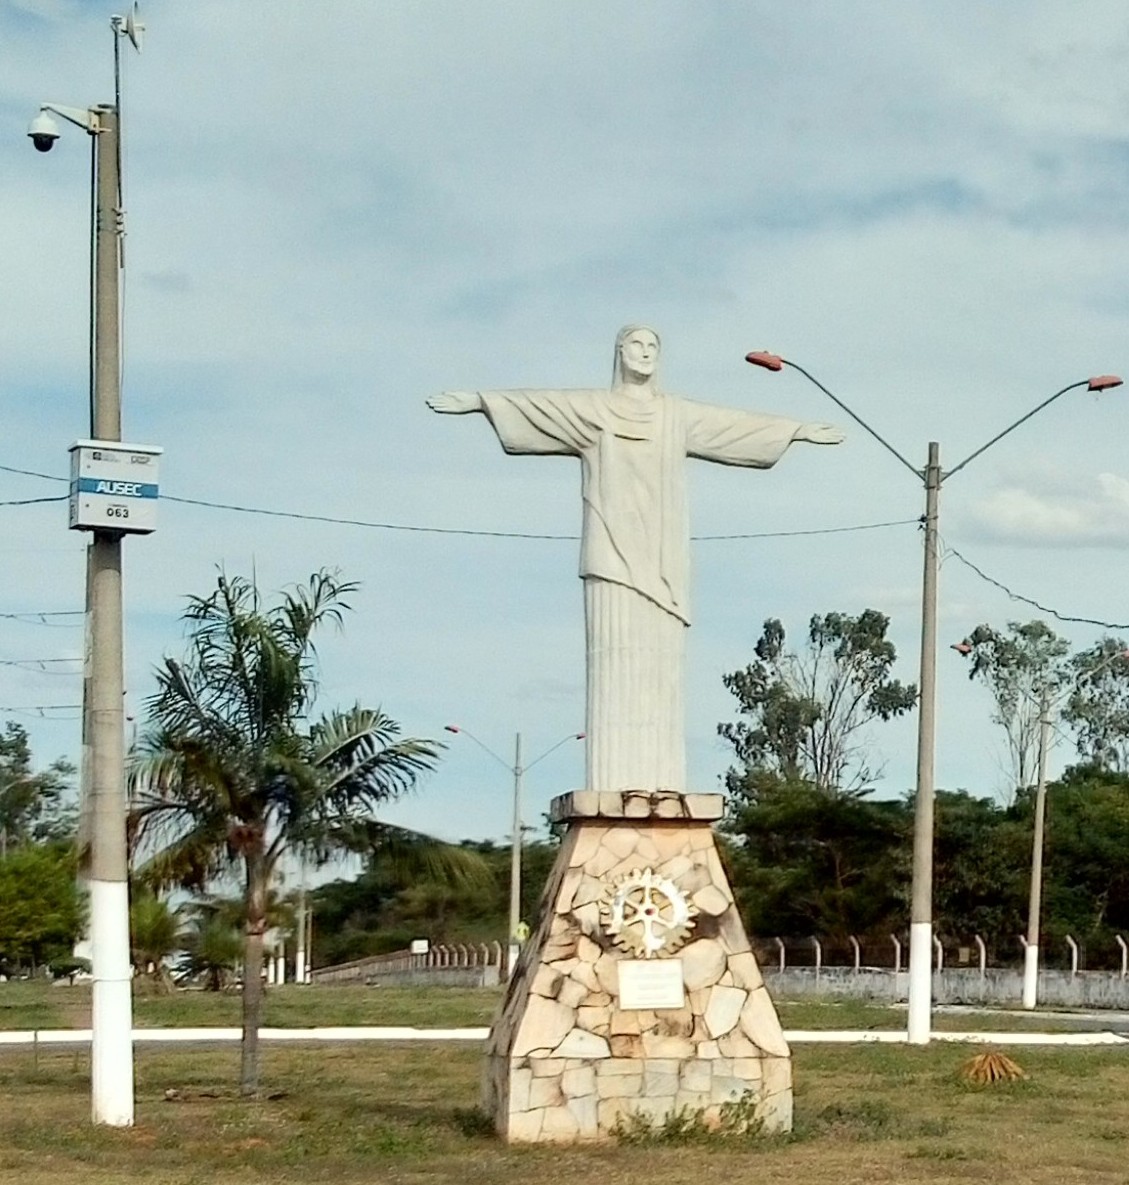 Paróquia Cristo Rei (Várzea Grande) – Arquidiocese de Cuiabá MT